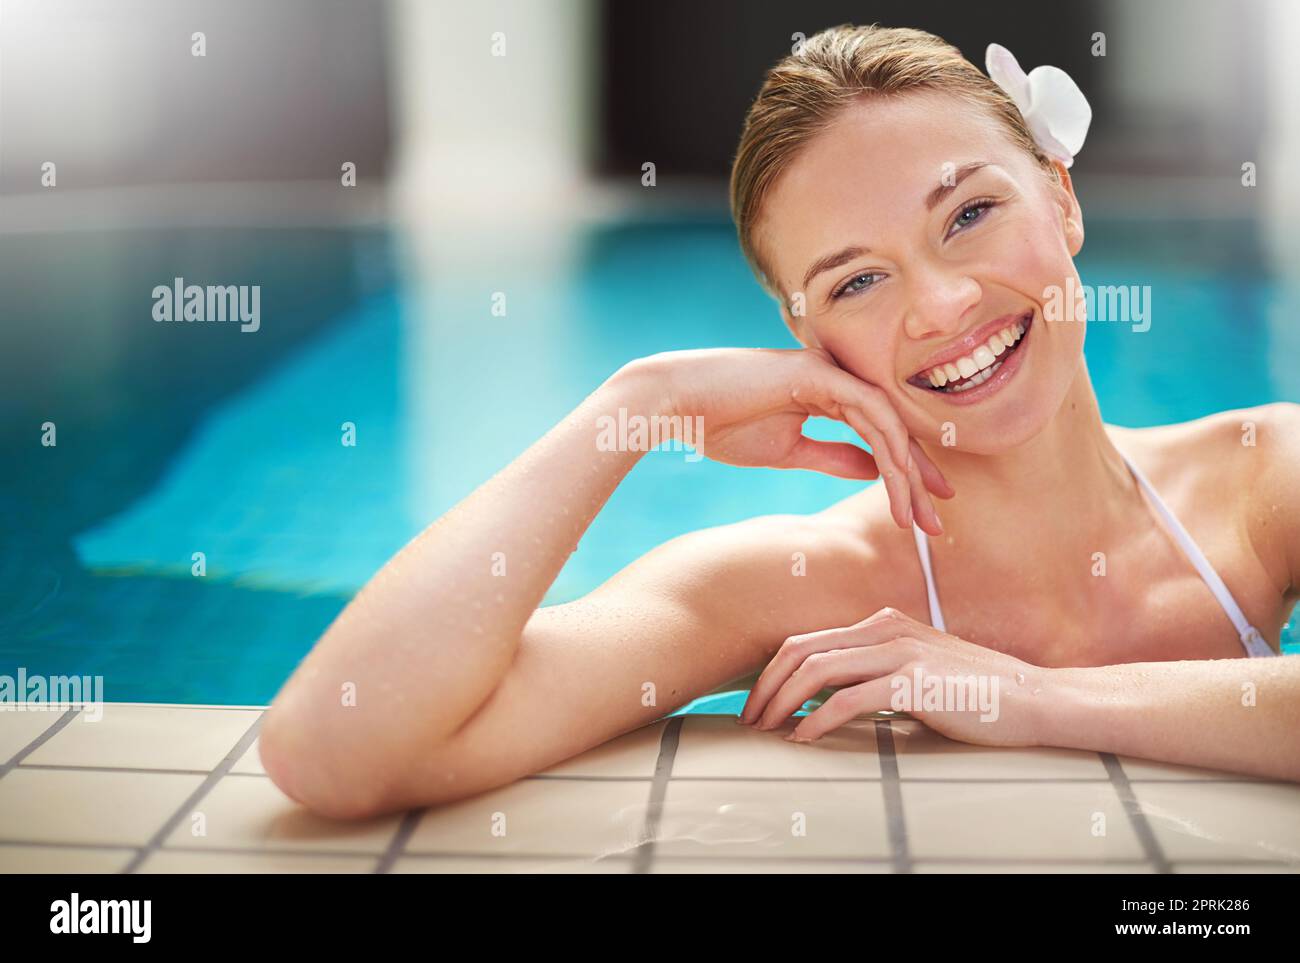 Le sourire qu'une baignade rafraîchissante pouvait donner. Une jeune femme se détendant dans la piscine dans un spa. Banque D'Images